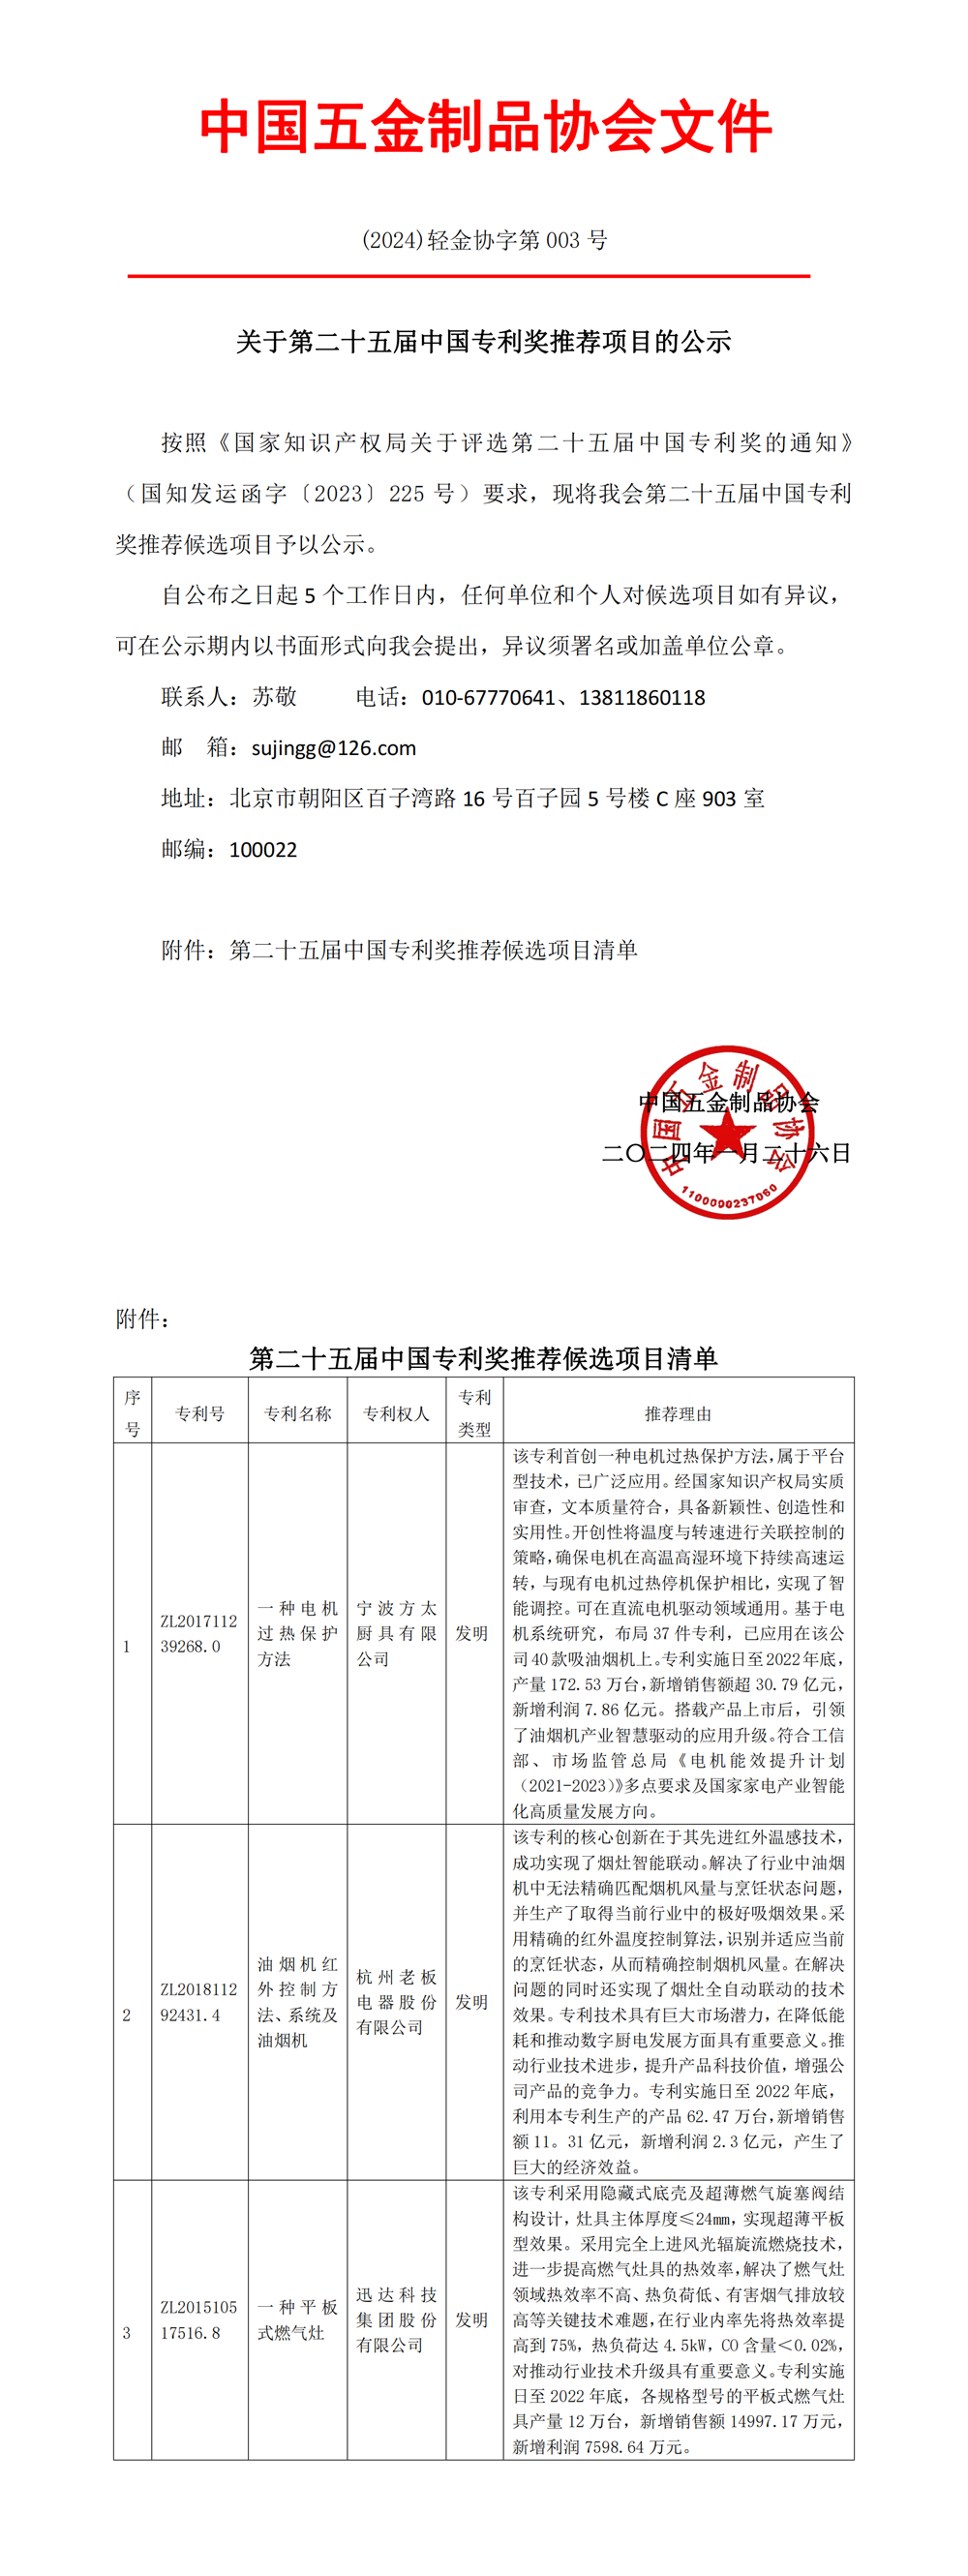 关于第二十五届中国专利奖推荐项目的公示_00 副本.png